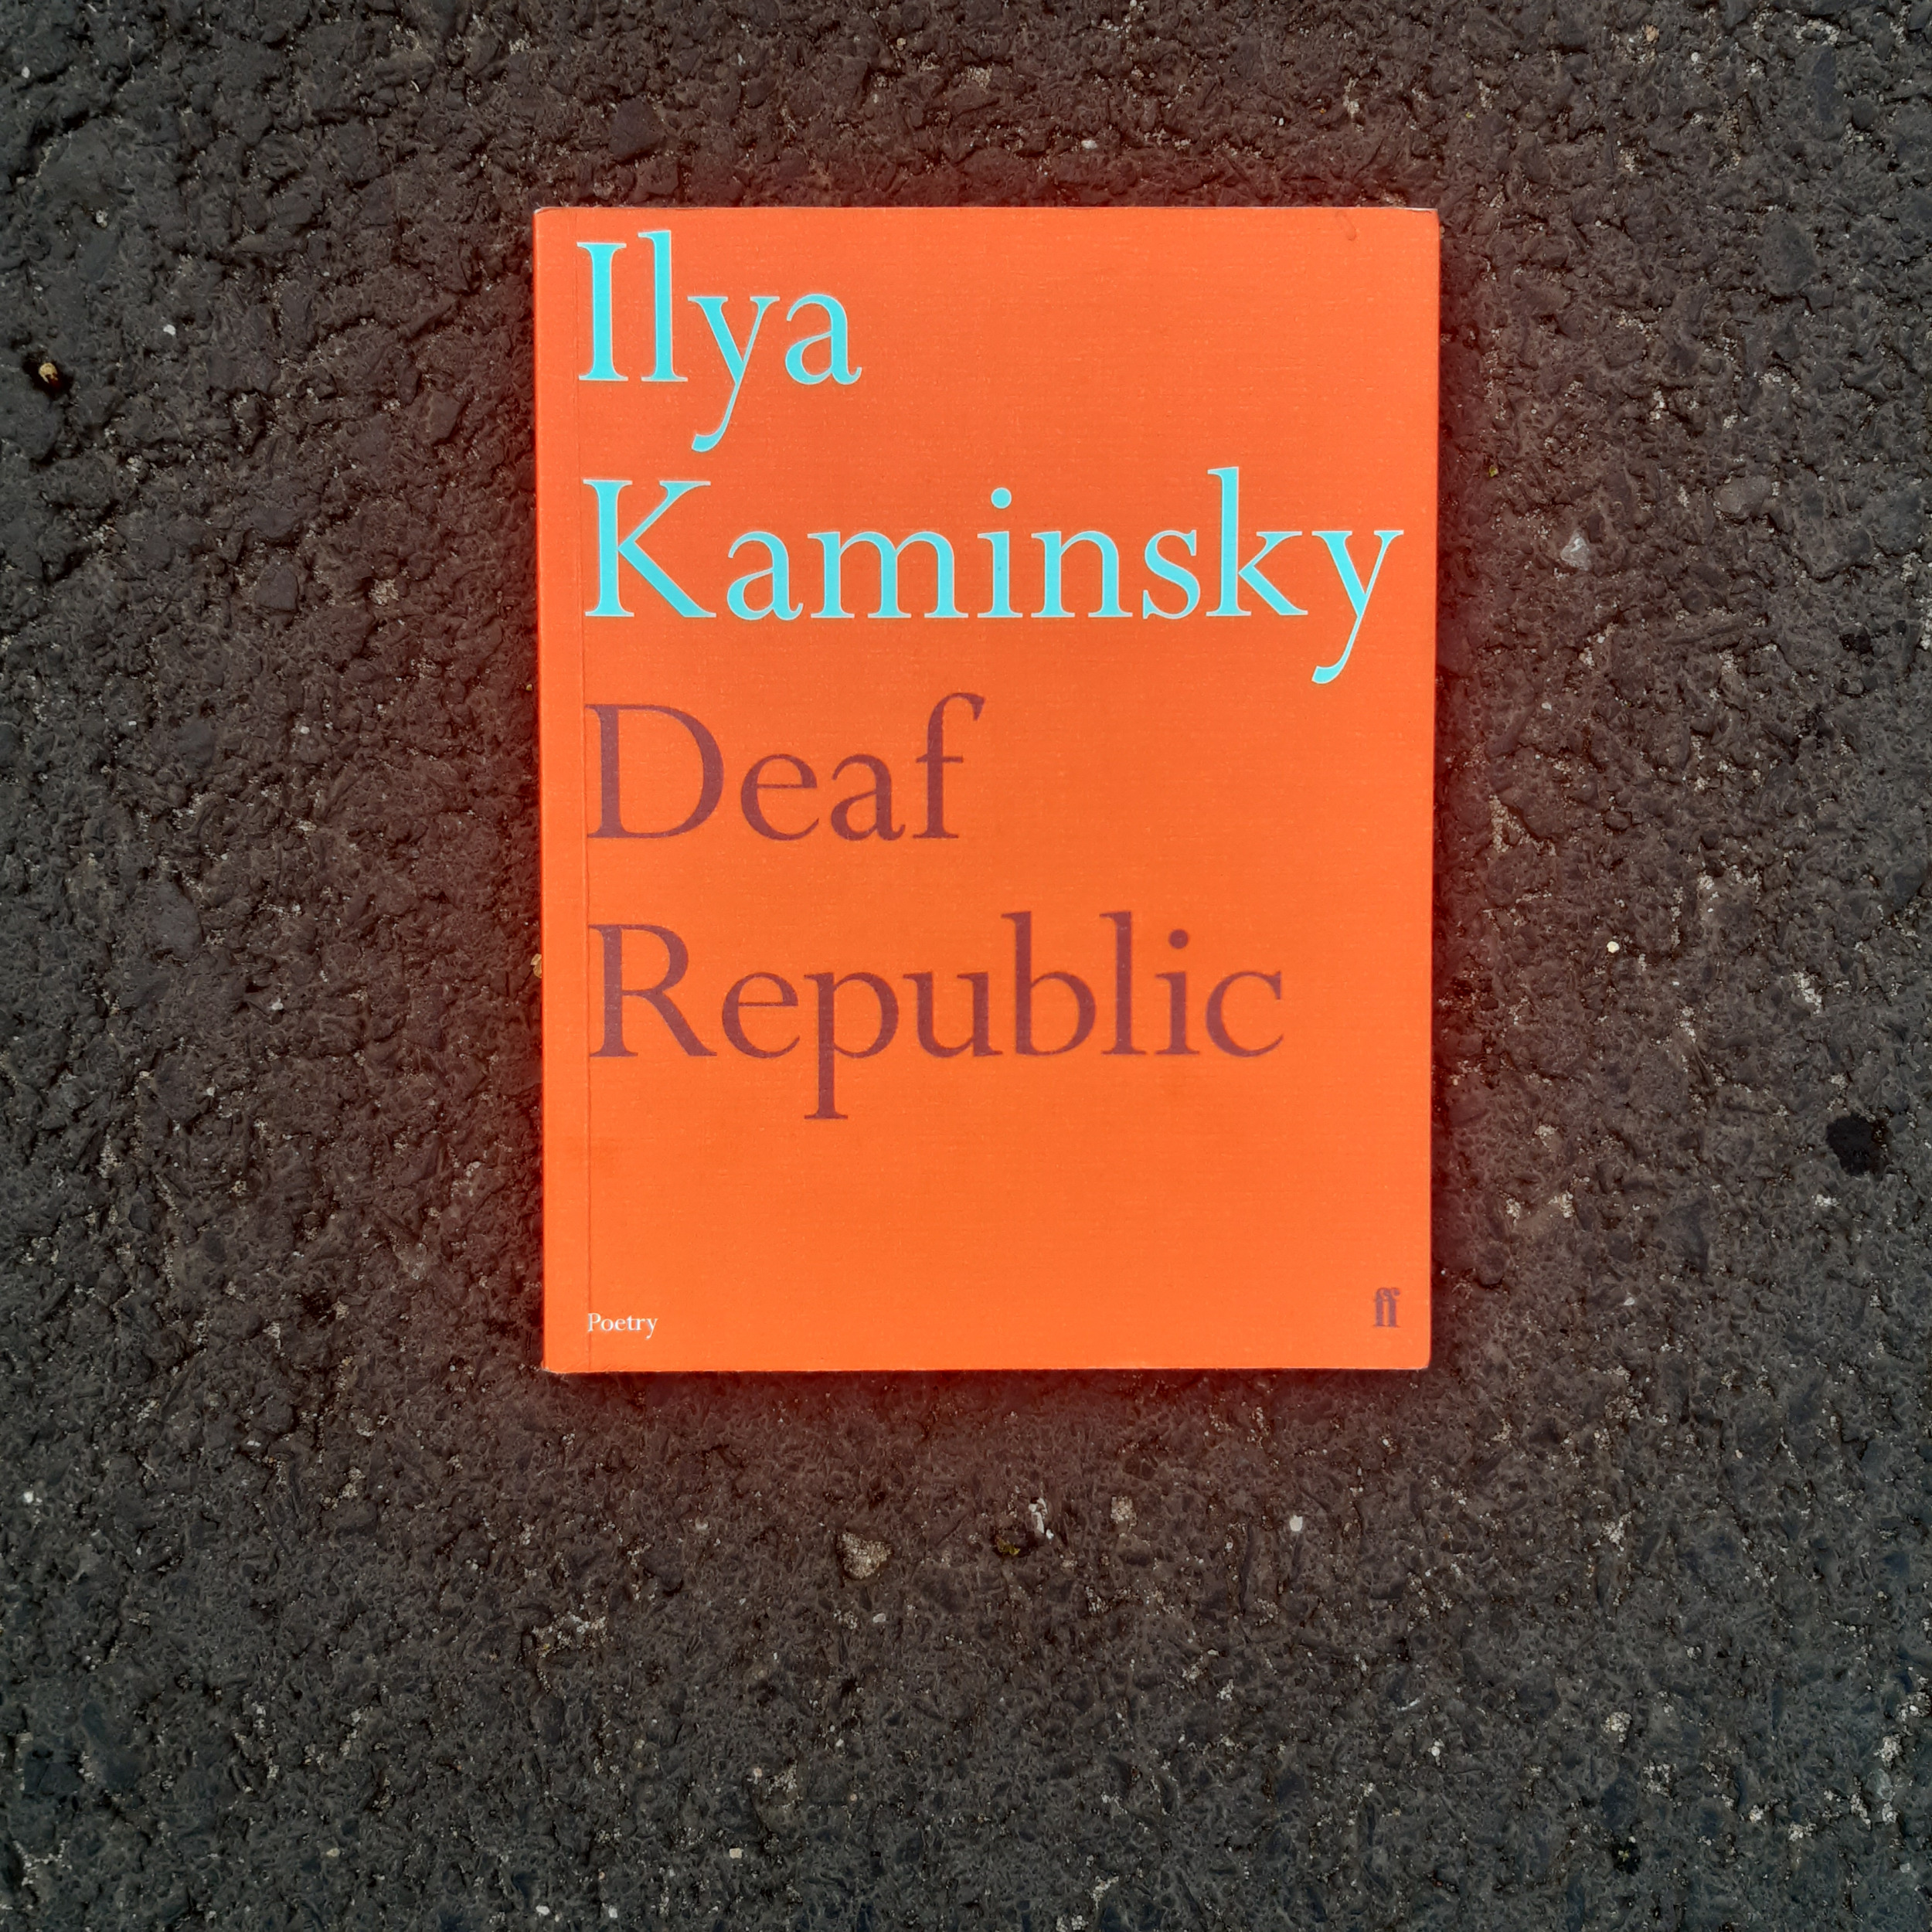 Pomarańczowa okładka książki z napisem "Ilya Kaminsky Deaf Republic".